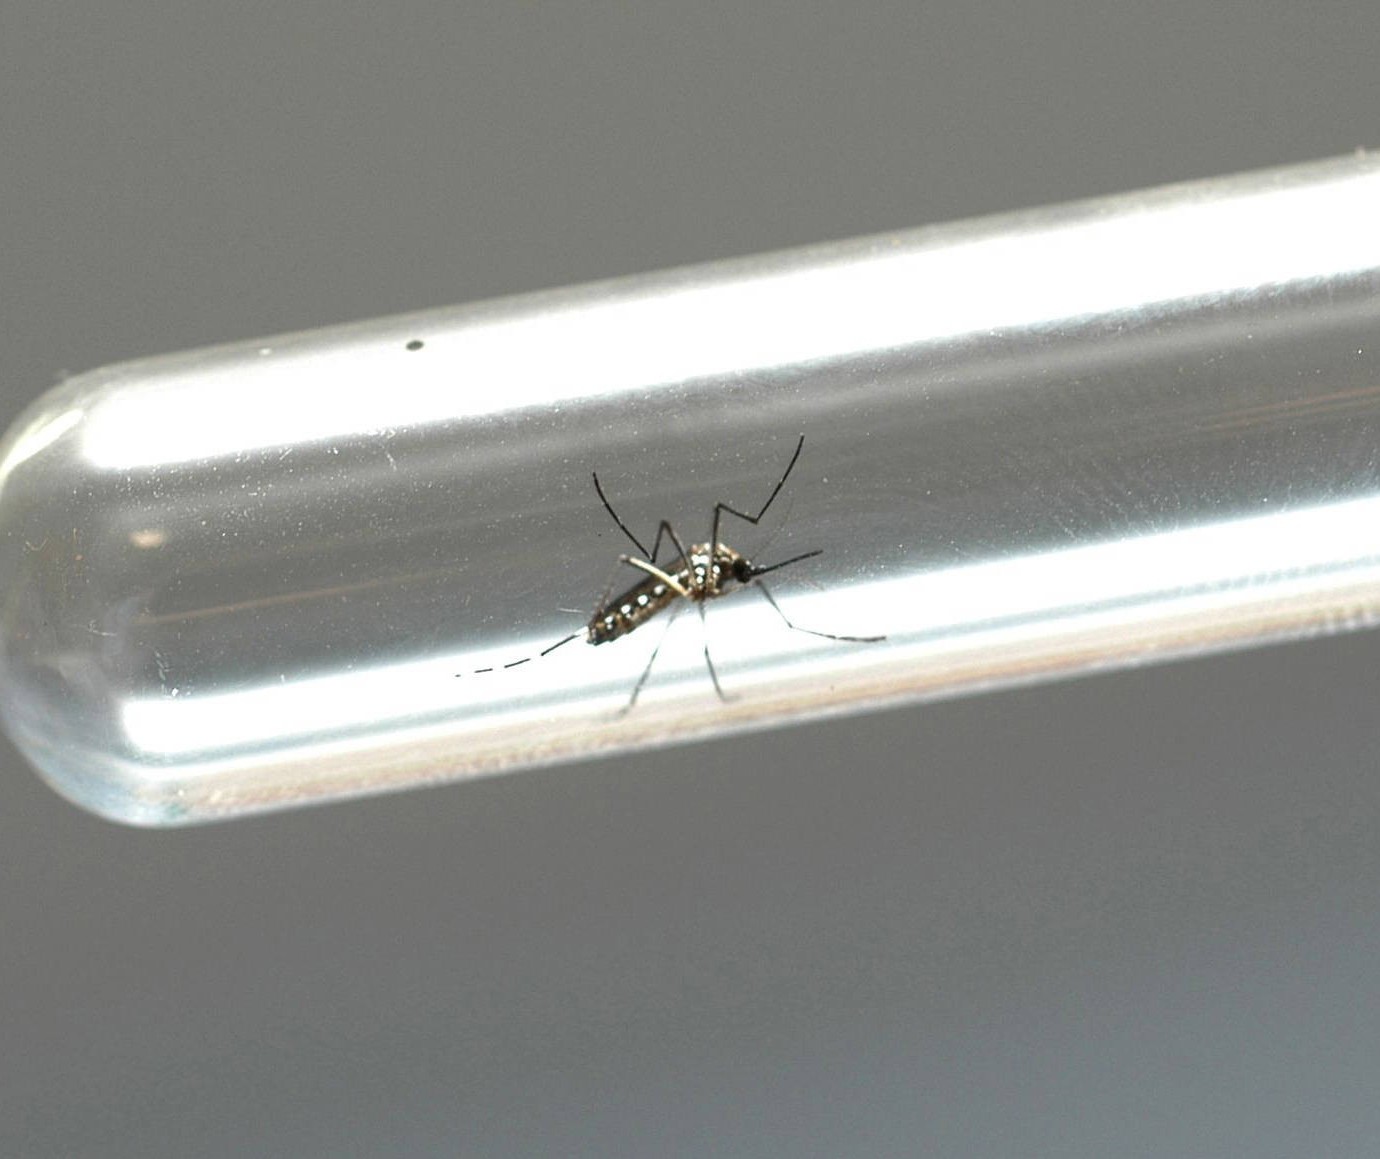 Índice de infestação predial de dengue em Maringá é de 0,6%